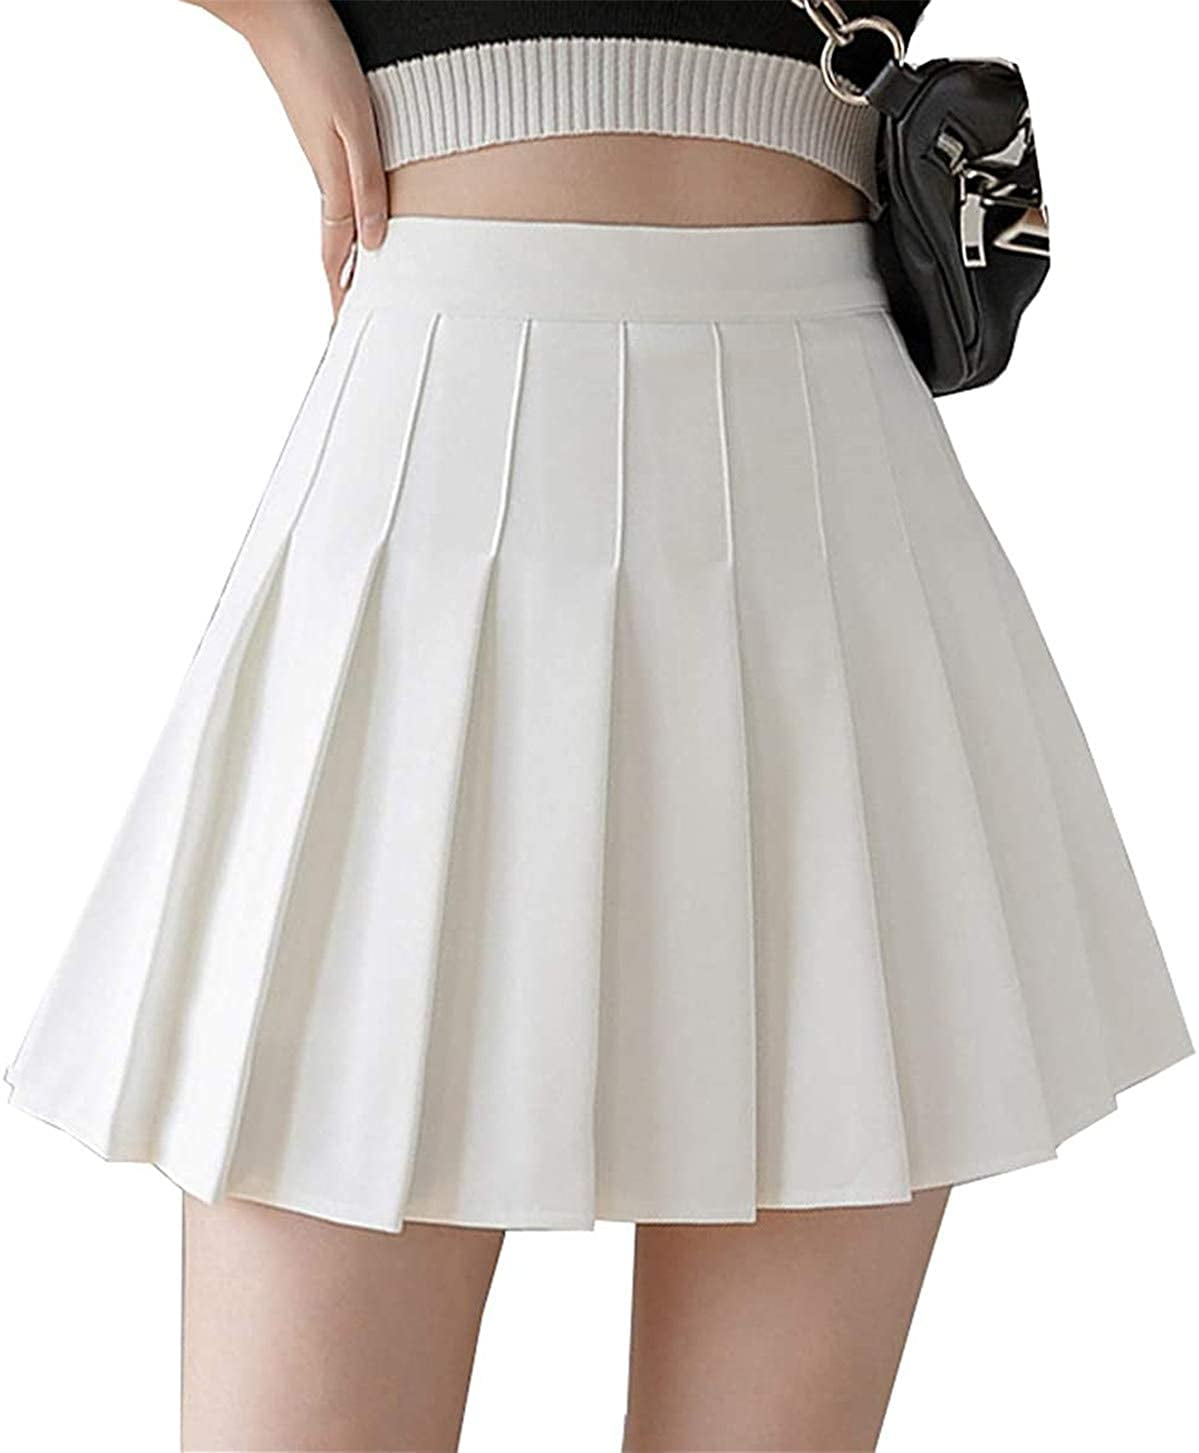 Girls Teens School Work Uniform Pleated Skirt Black Zip Long 19 Inch 5% Spandex 